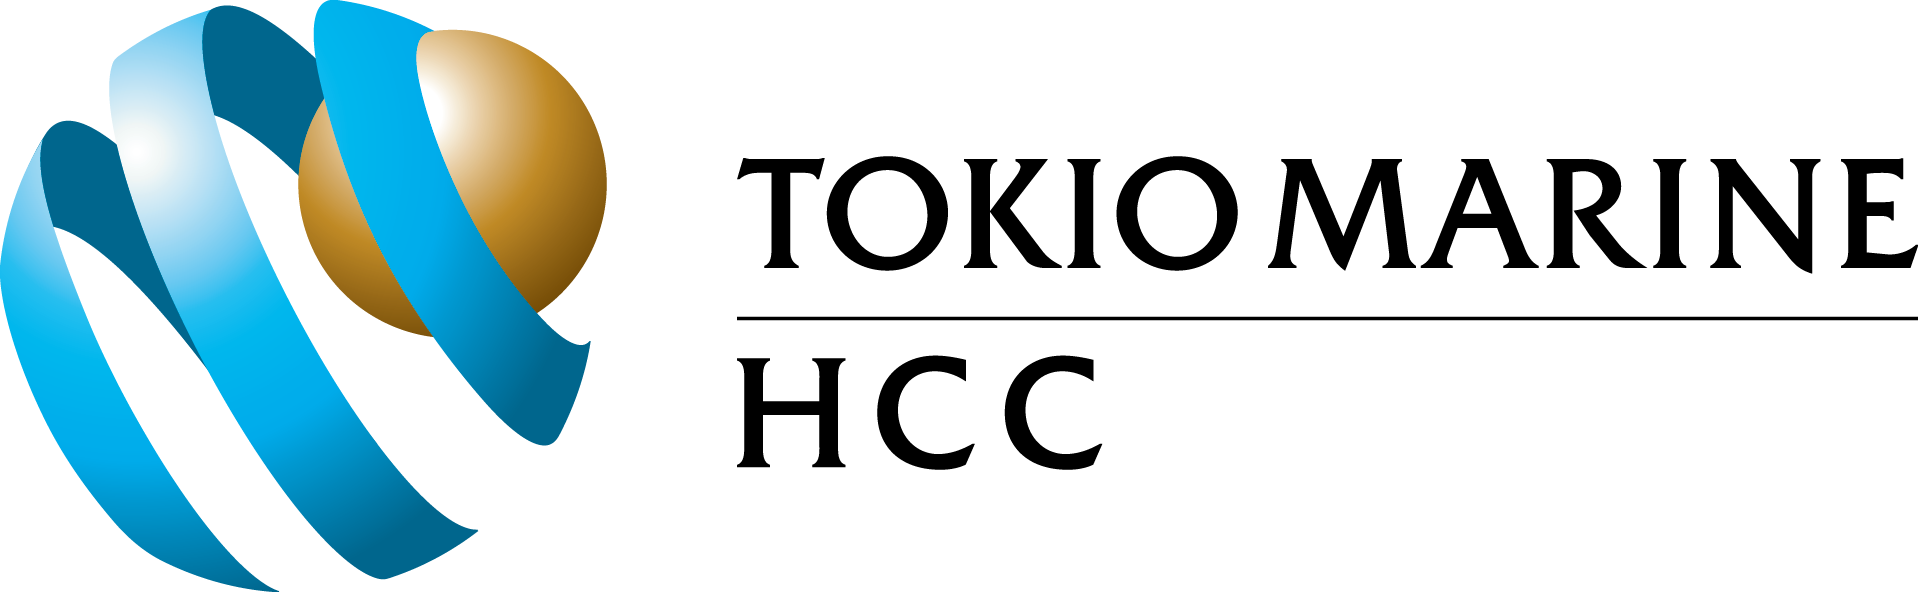 tm_hcc_symbol_h_2_vector_4c